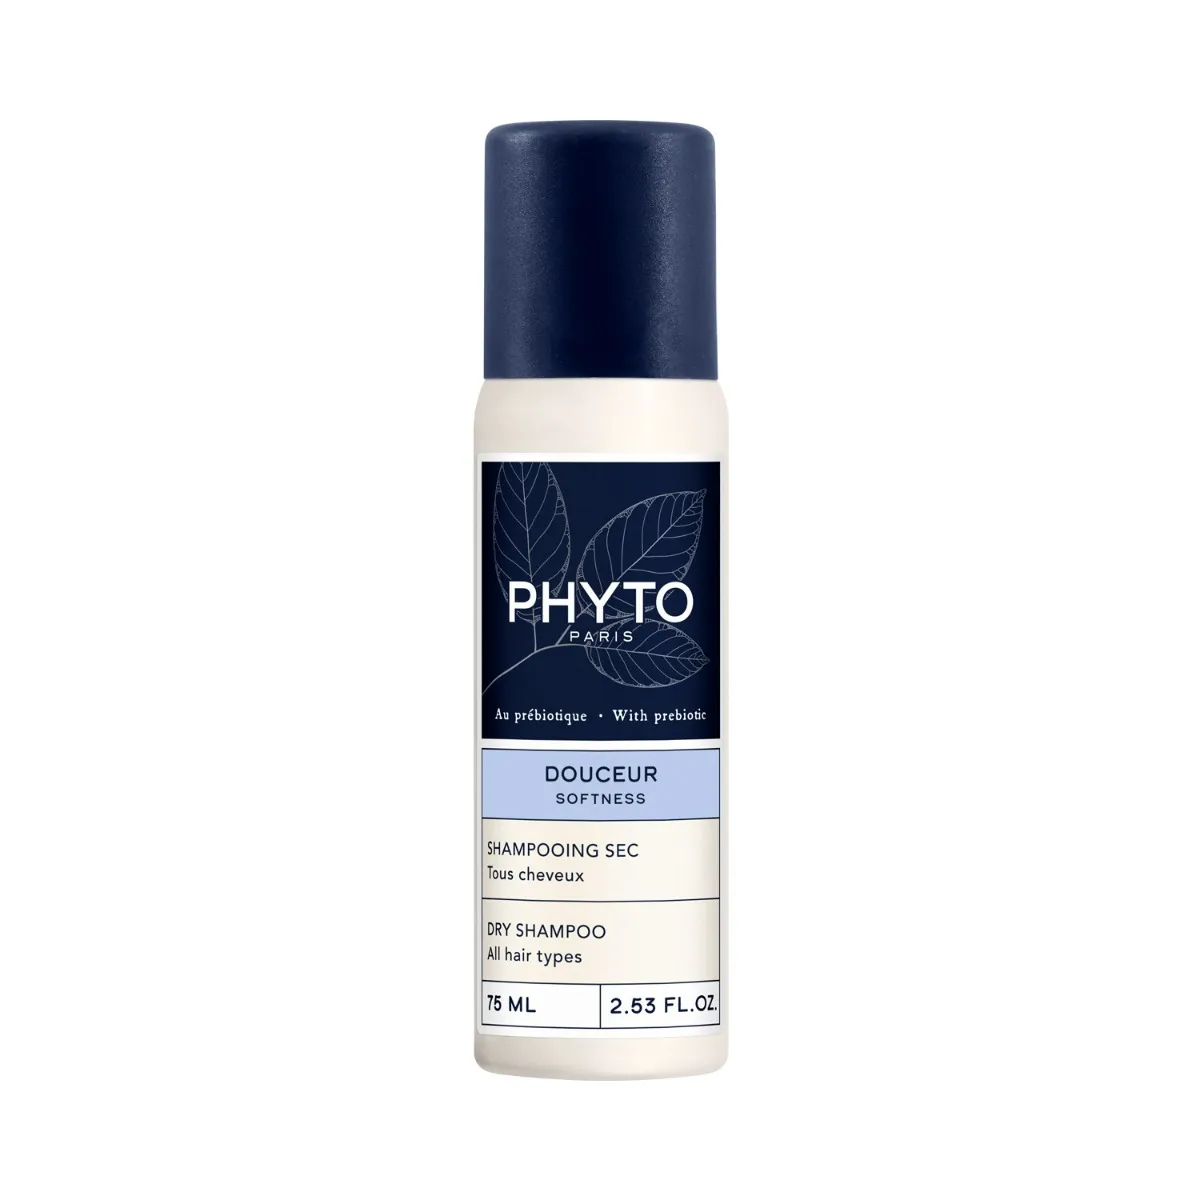 PHYTO PHYTOCYANE Softness suchy szampon do każdego rodzaju włosów, 75 ml